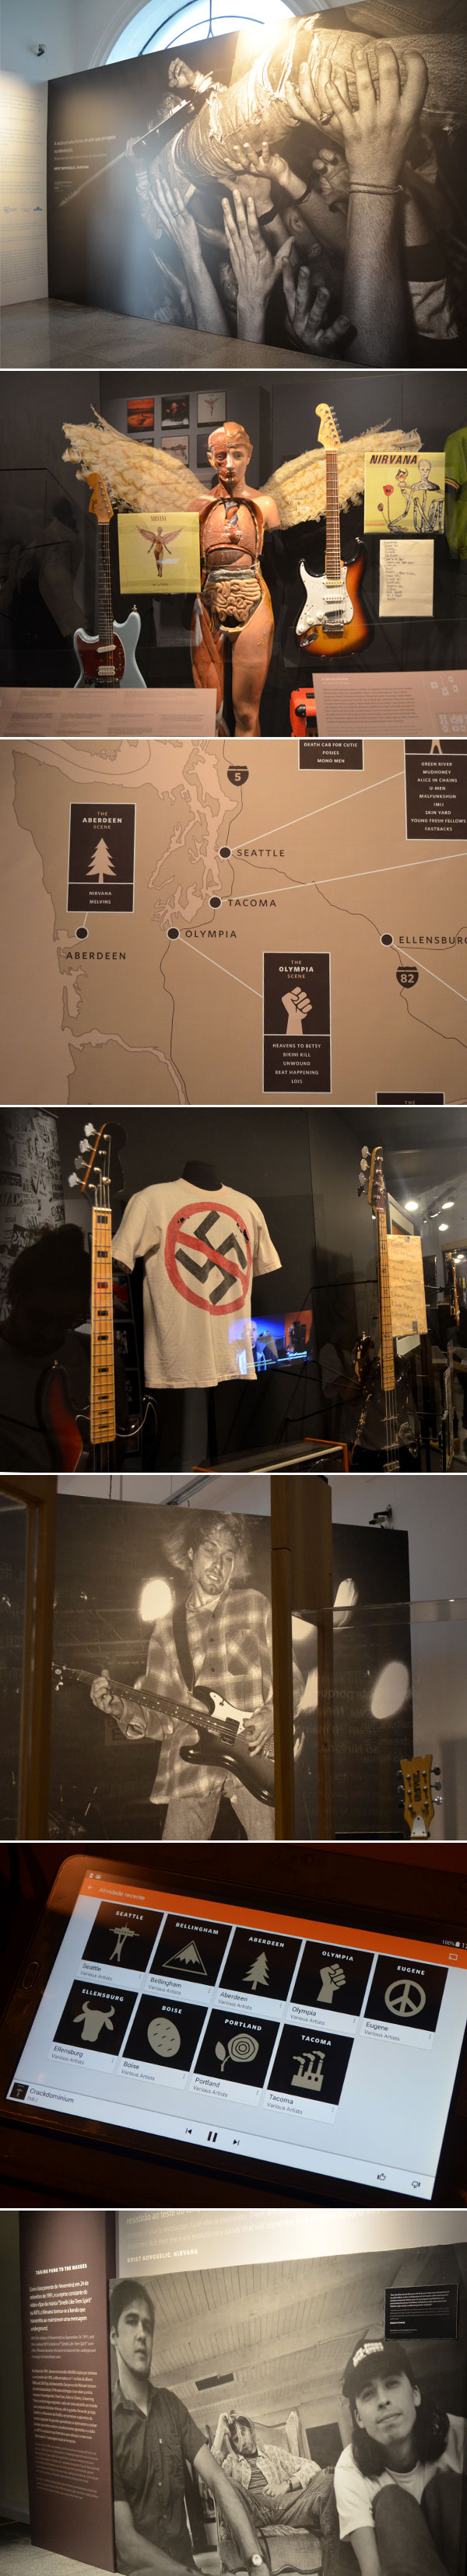 Nirvana: Taking Punk to the Masses | Samsung Rock Exhibition - fotos da exposição no Museu Histórico Nacional, no Rio de Janeiro